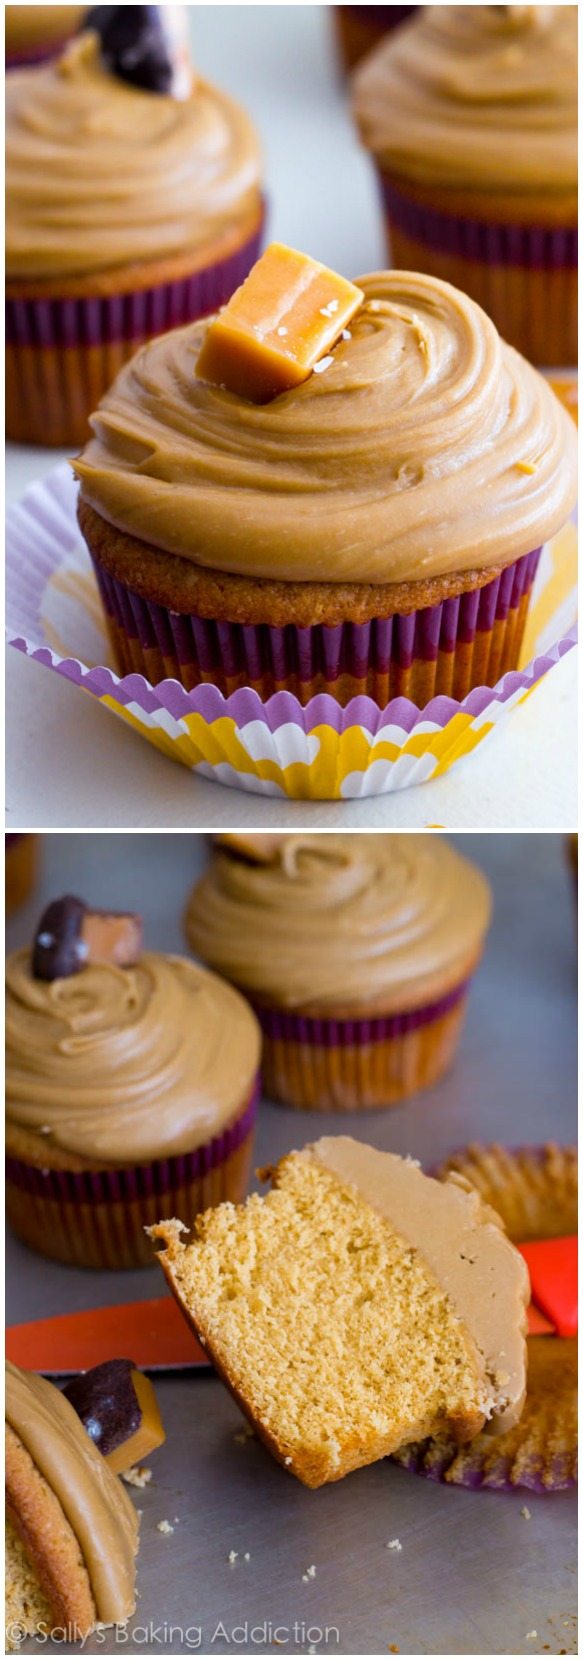 Ce sont les meilleurs cupcakes! Cupcakes au caramel garnis de glaçage au caramel salé et de bonbons au caramel salé. @sallybakeblog